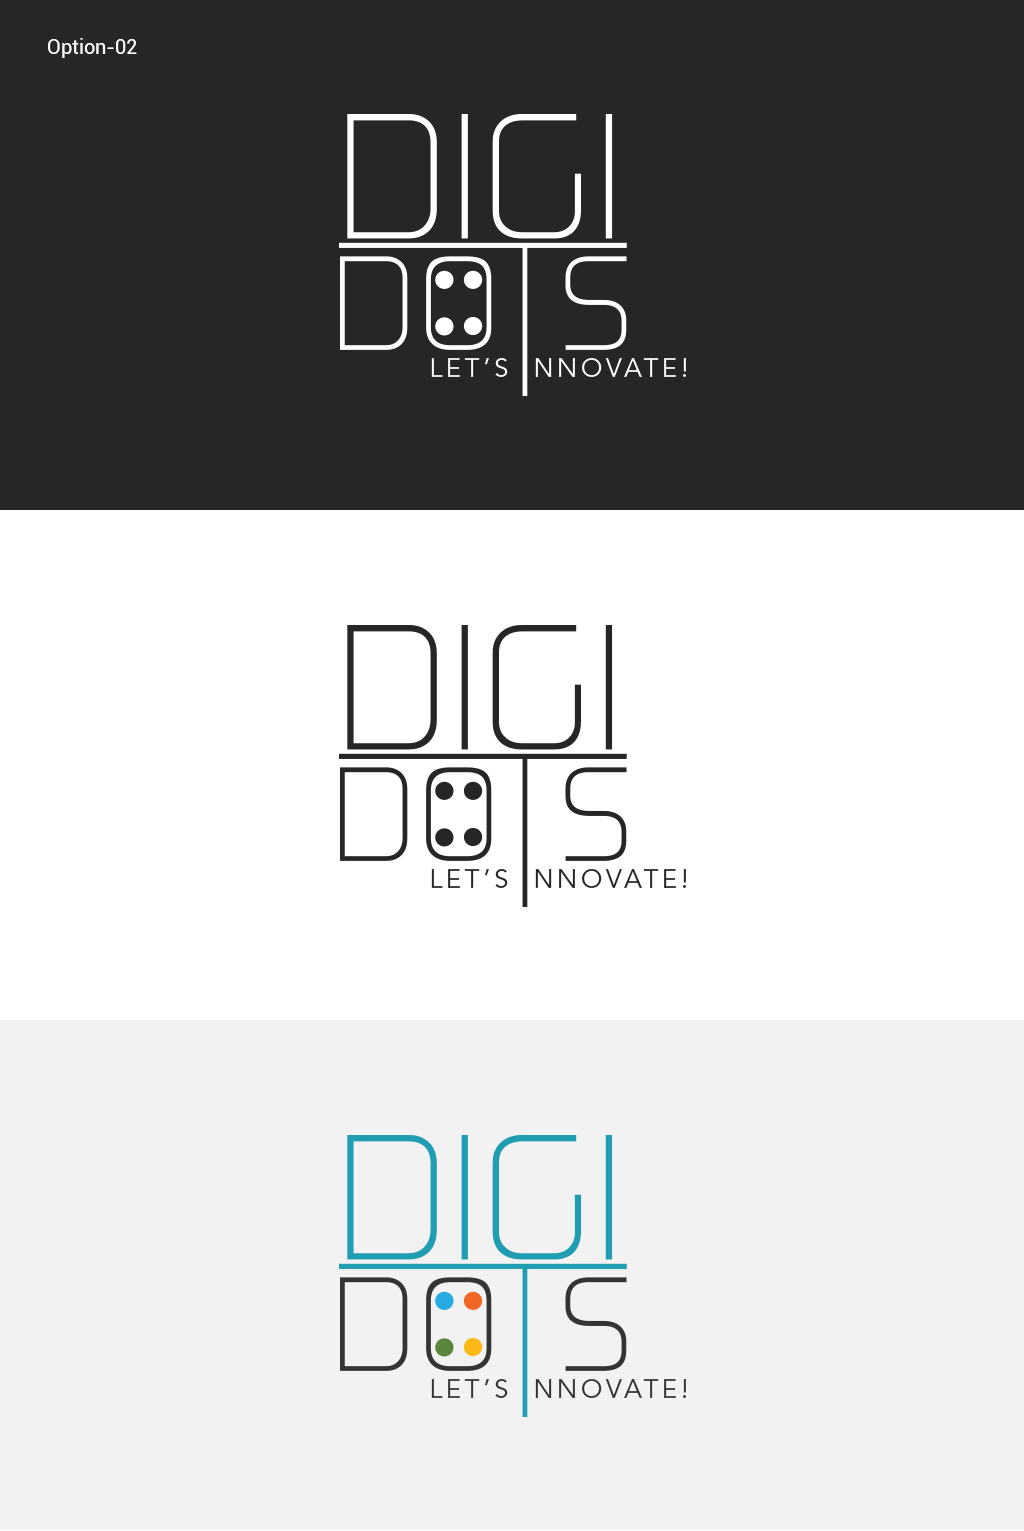 digital marketing   social media company logo identity